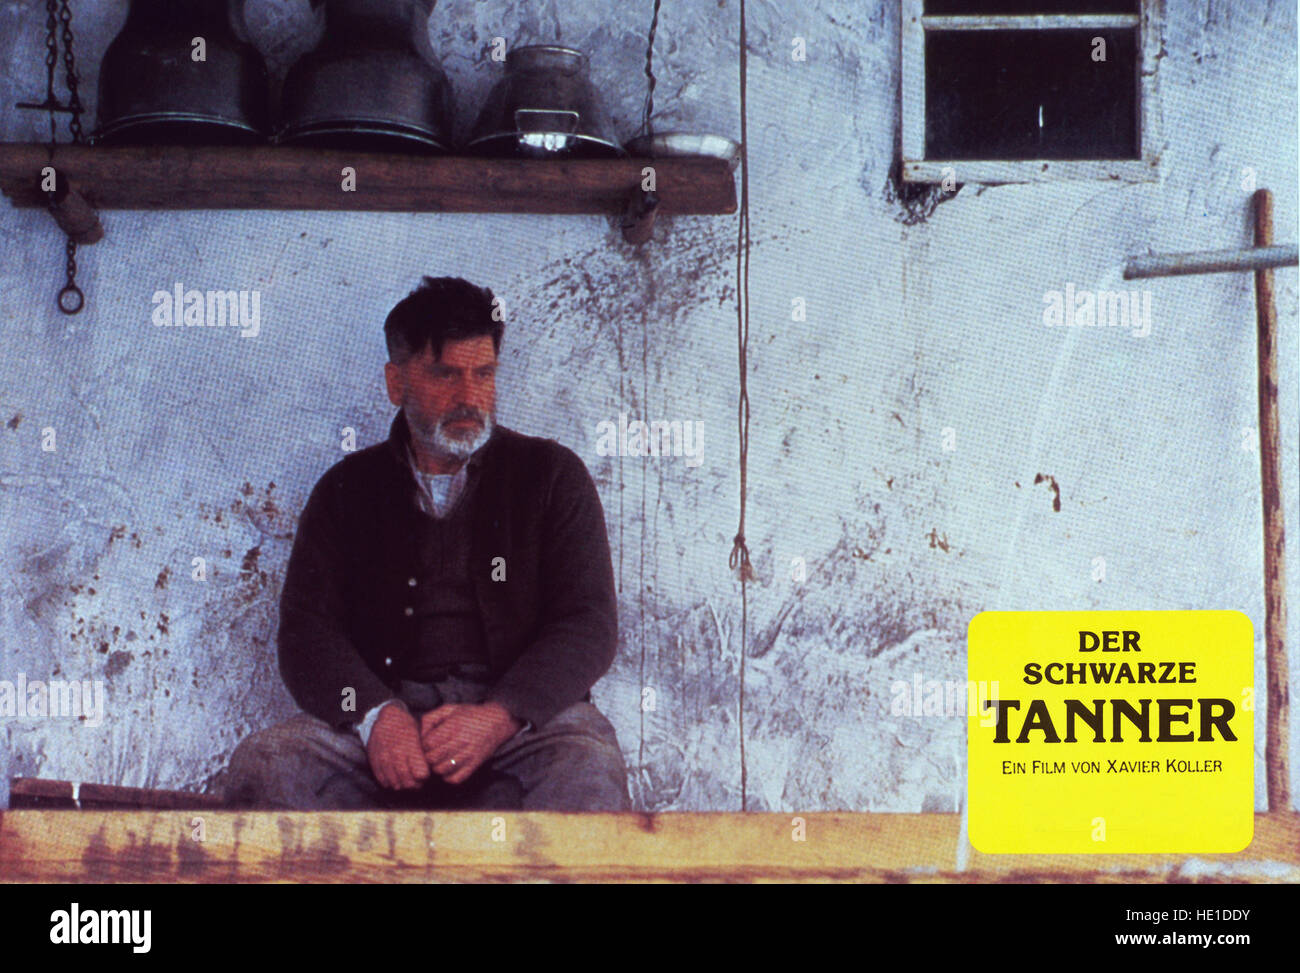 Der schwarze Tanner, Deutschland 1985, Regie: Xavier Koller, Darsteller: Otto Mächtlinger Stock Photo